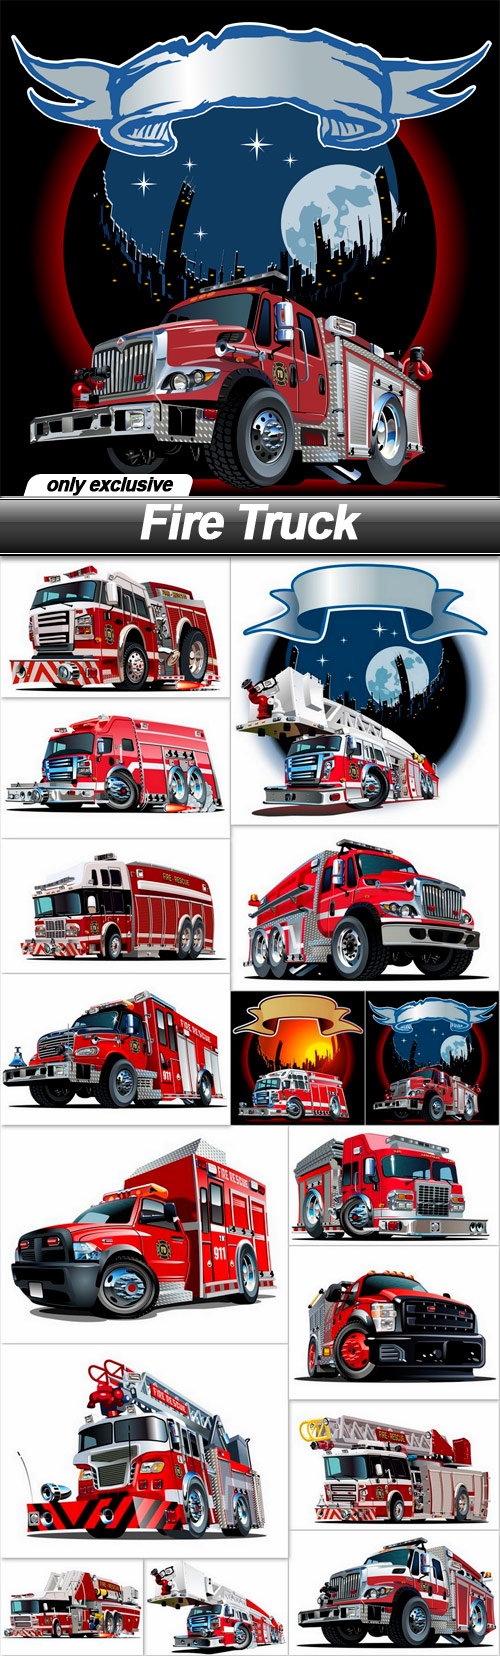 Fire Truck - 16 EPS